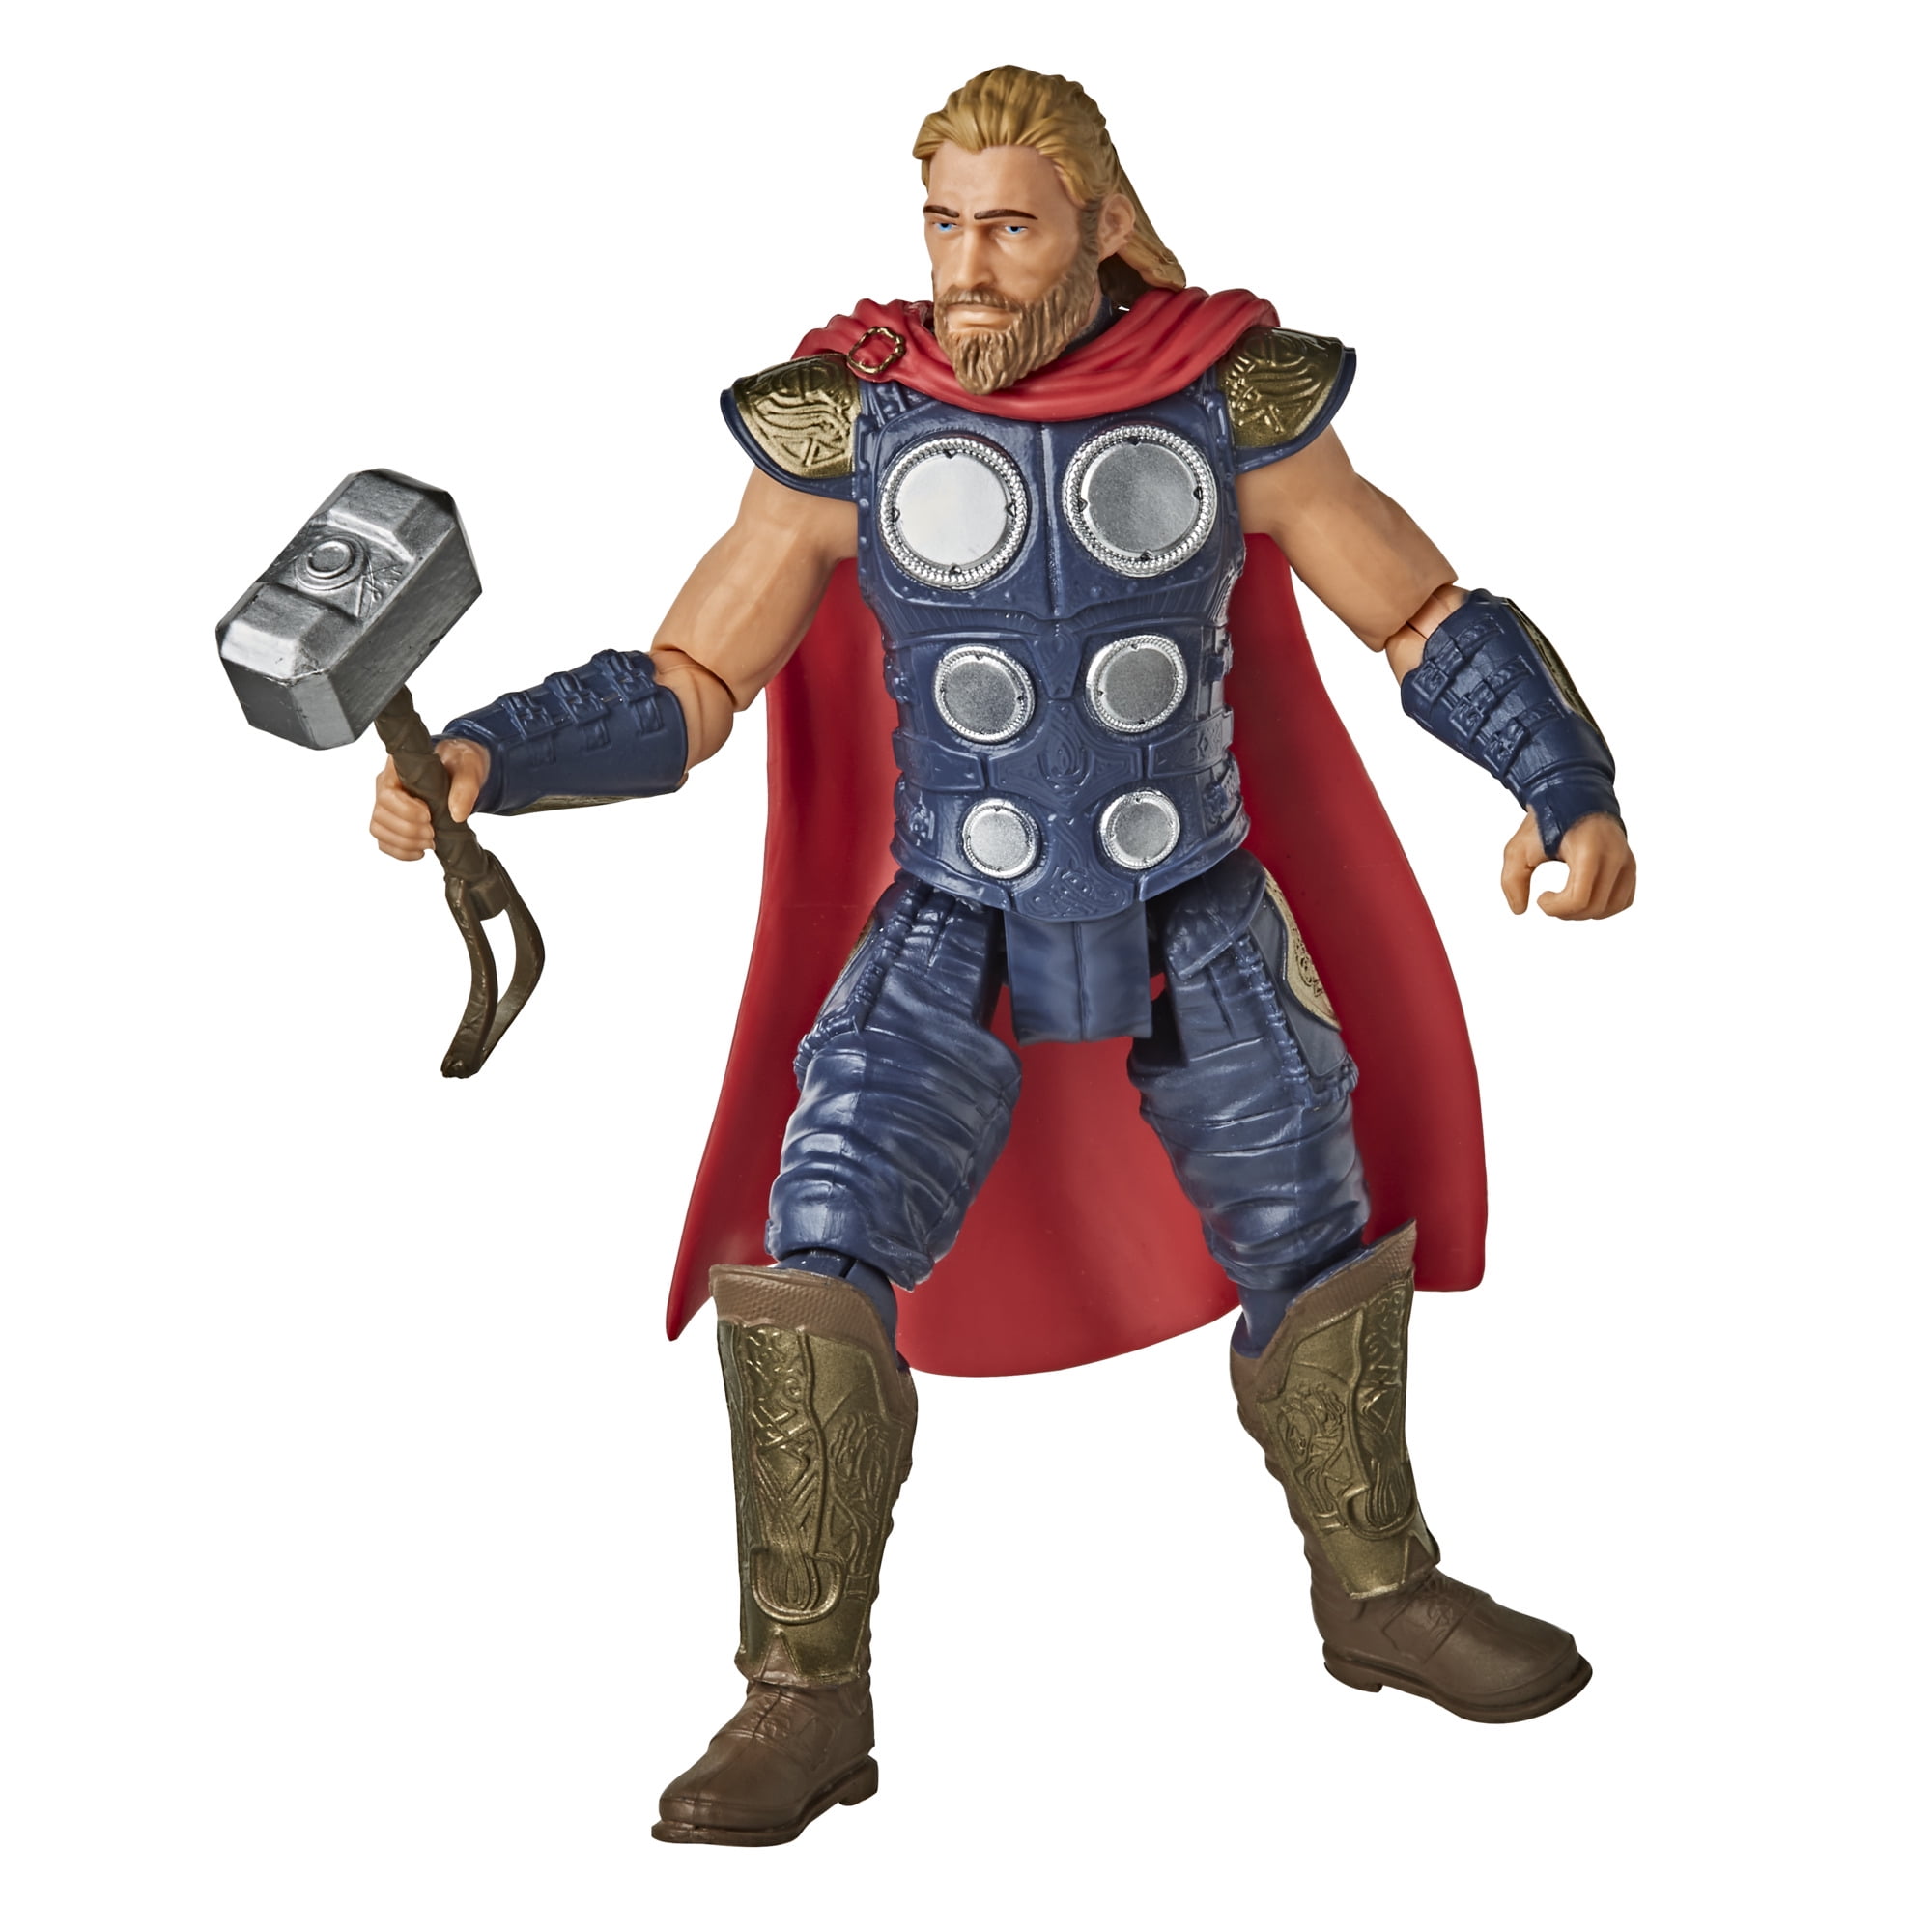 Custom 1/6th The Avengers Thor HeadSculpt For 12" Men's Action Figure Doll Toys